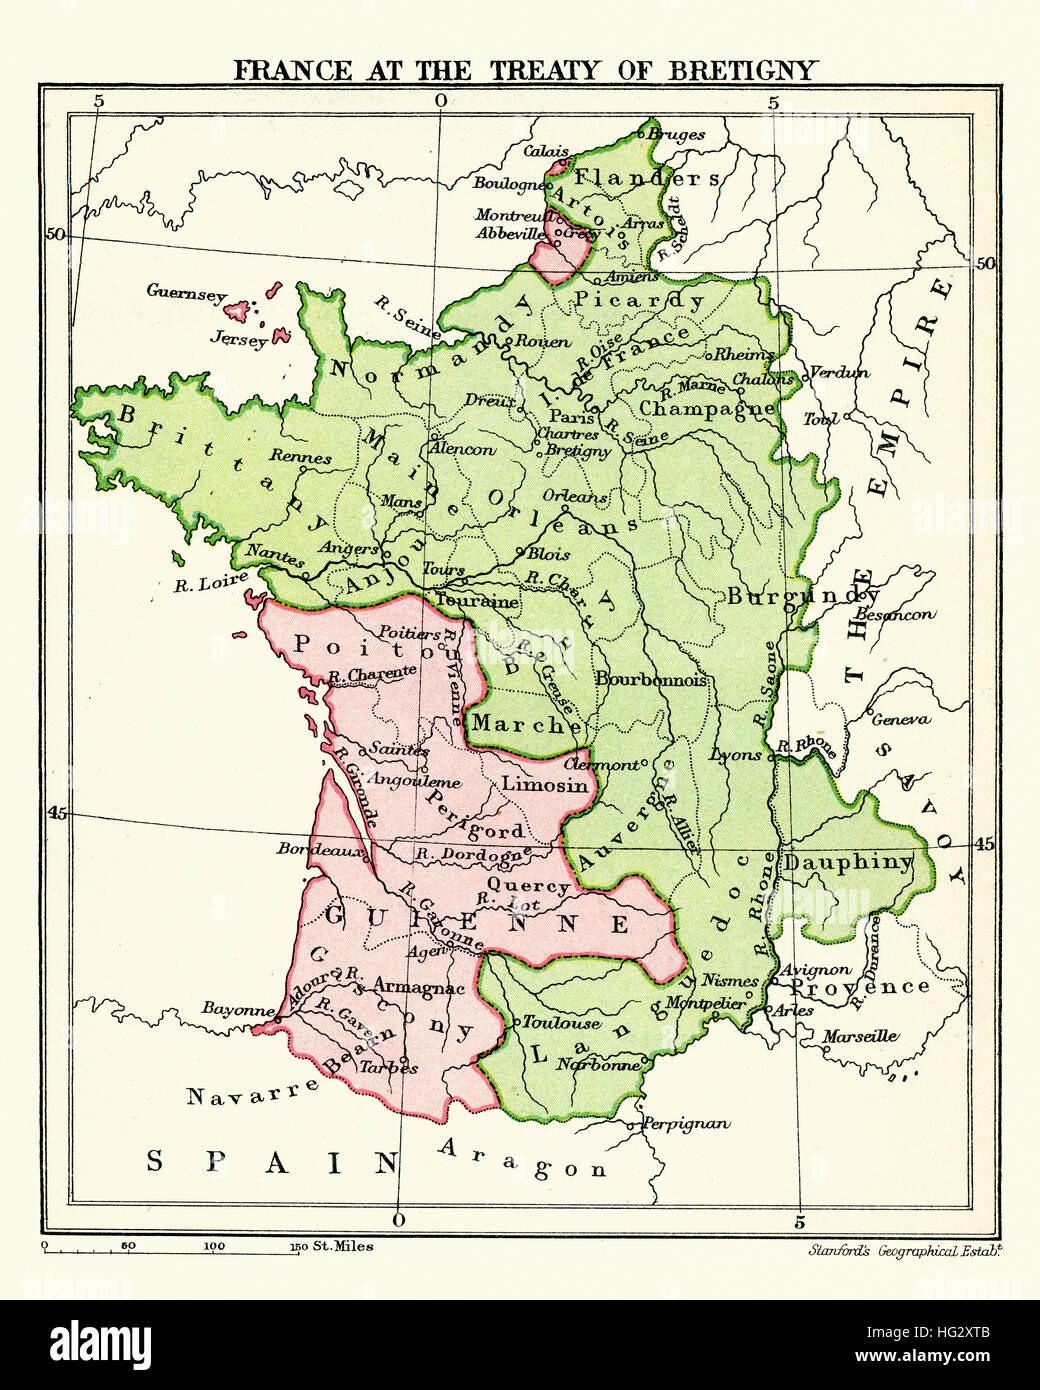 Karte von Frankreich im Vertrag von Bretigny. Am 24 Oktober 1360 zwischen König Edward III. von England und König Johann II. von Frankreich ratifiziert. Es gilt als hav Stockfoto